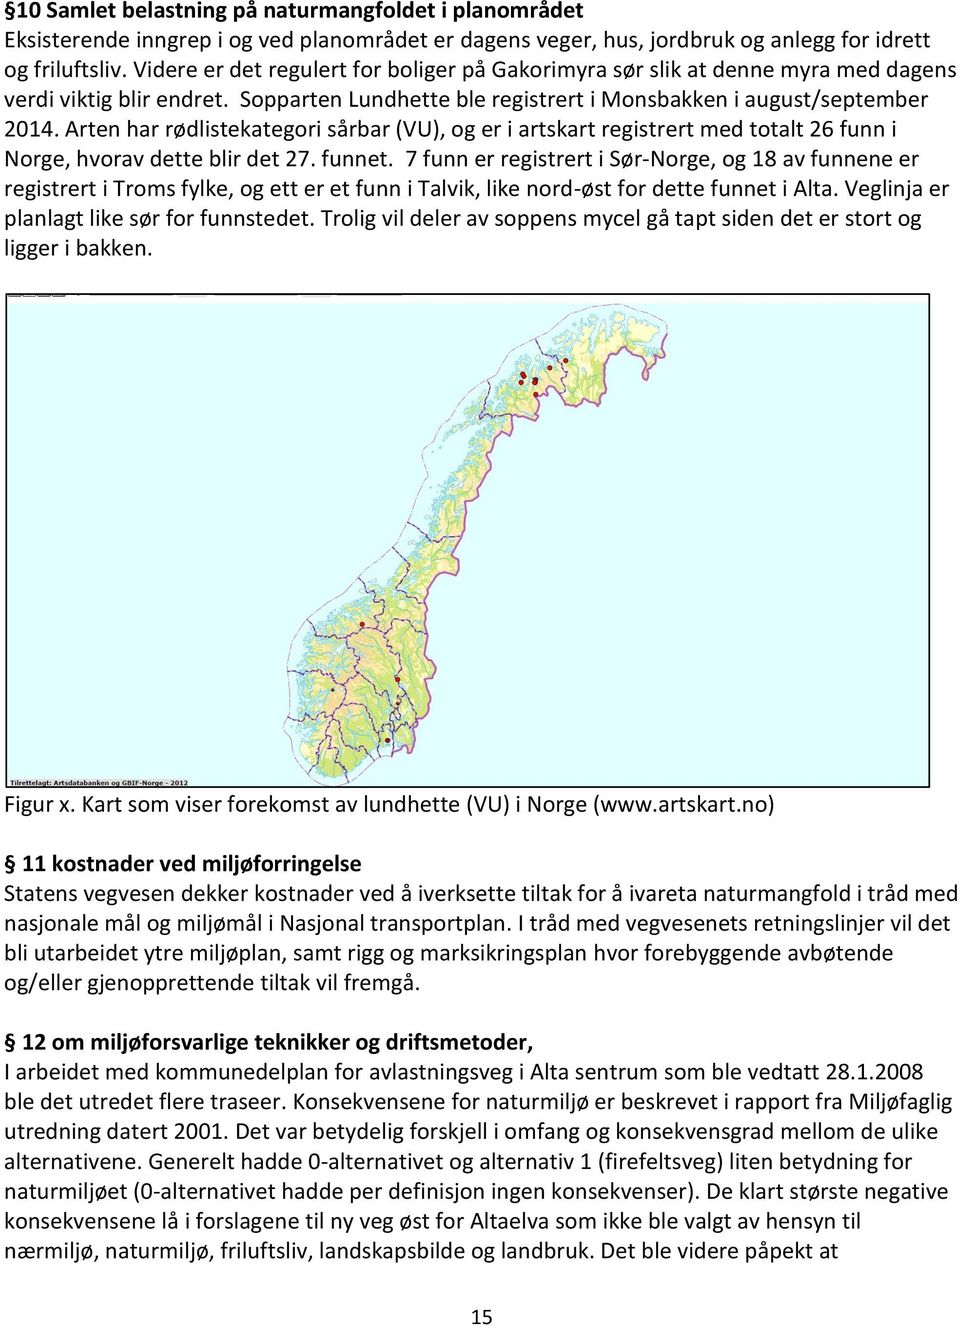 Arten har rødlistekategori sårbar (VU), og er i artskart registrert med totalt 26 funn i Norge, hvorav dette blir det 27. funnet.